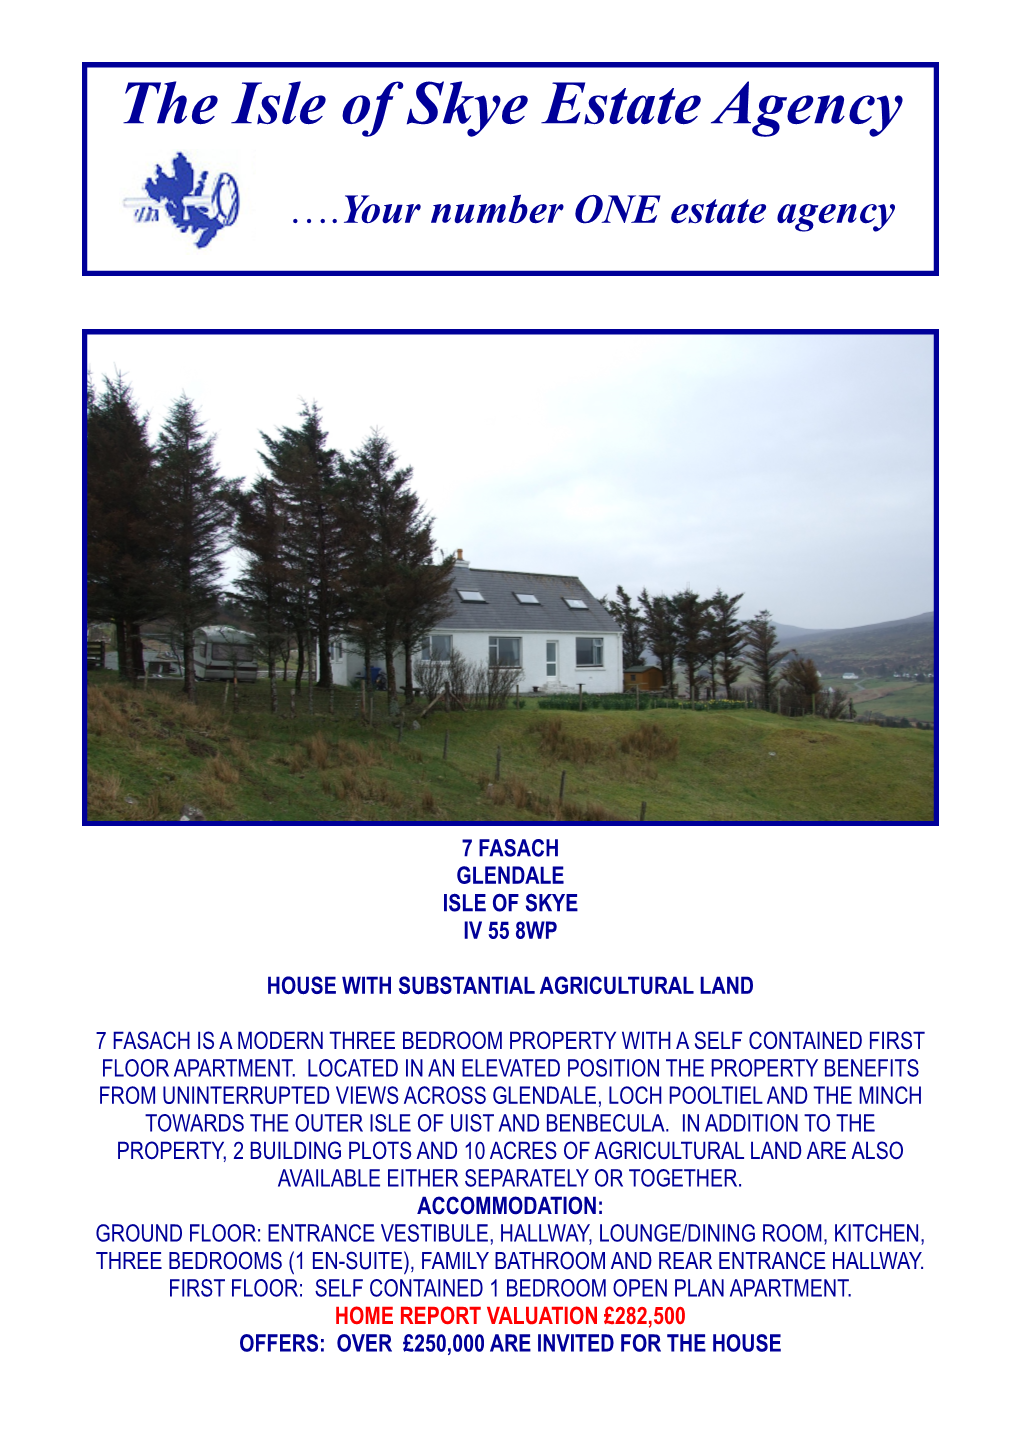 7 Fasach Glendale Isle of Skye Iv 55 8Wp